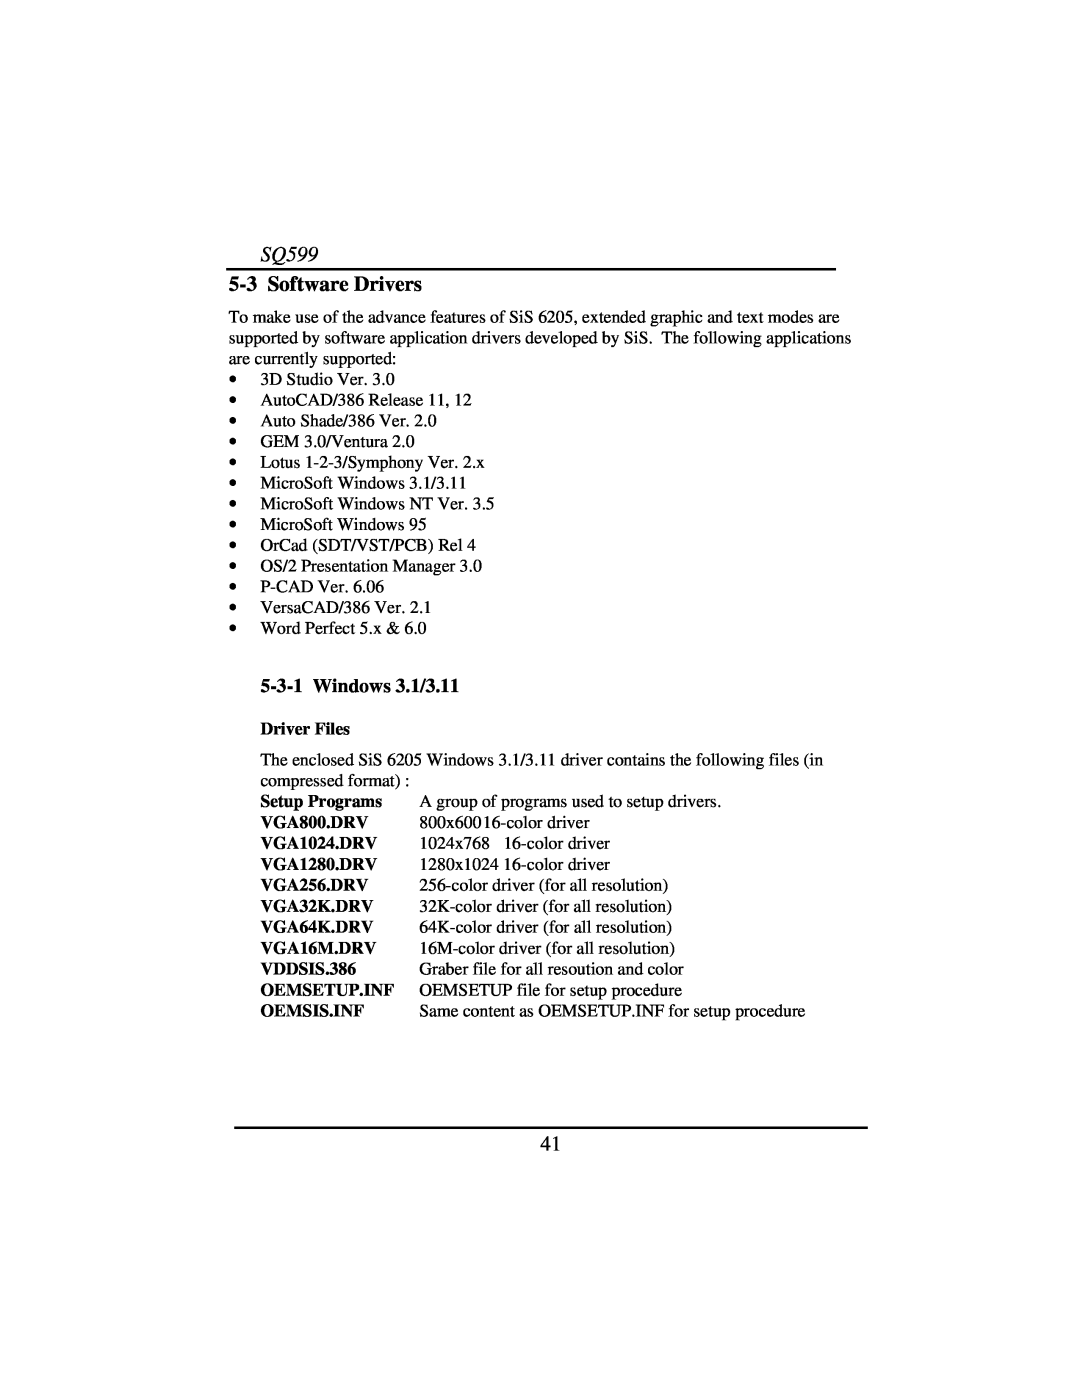 Intel SQ599 manual 